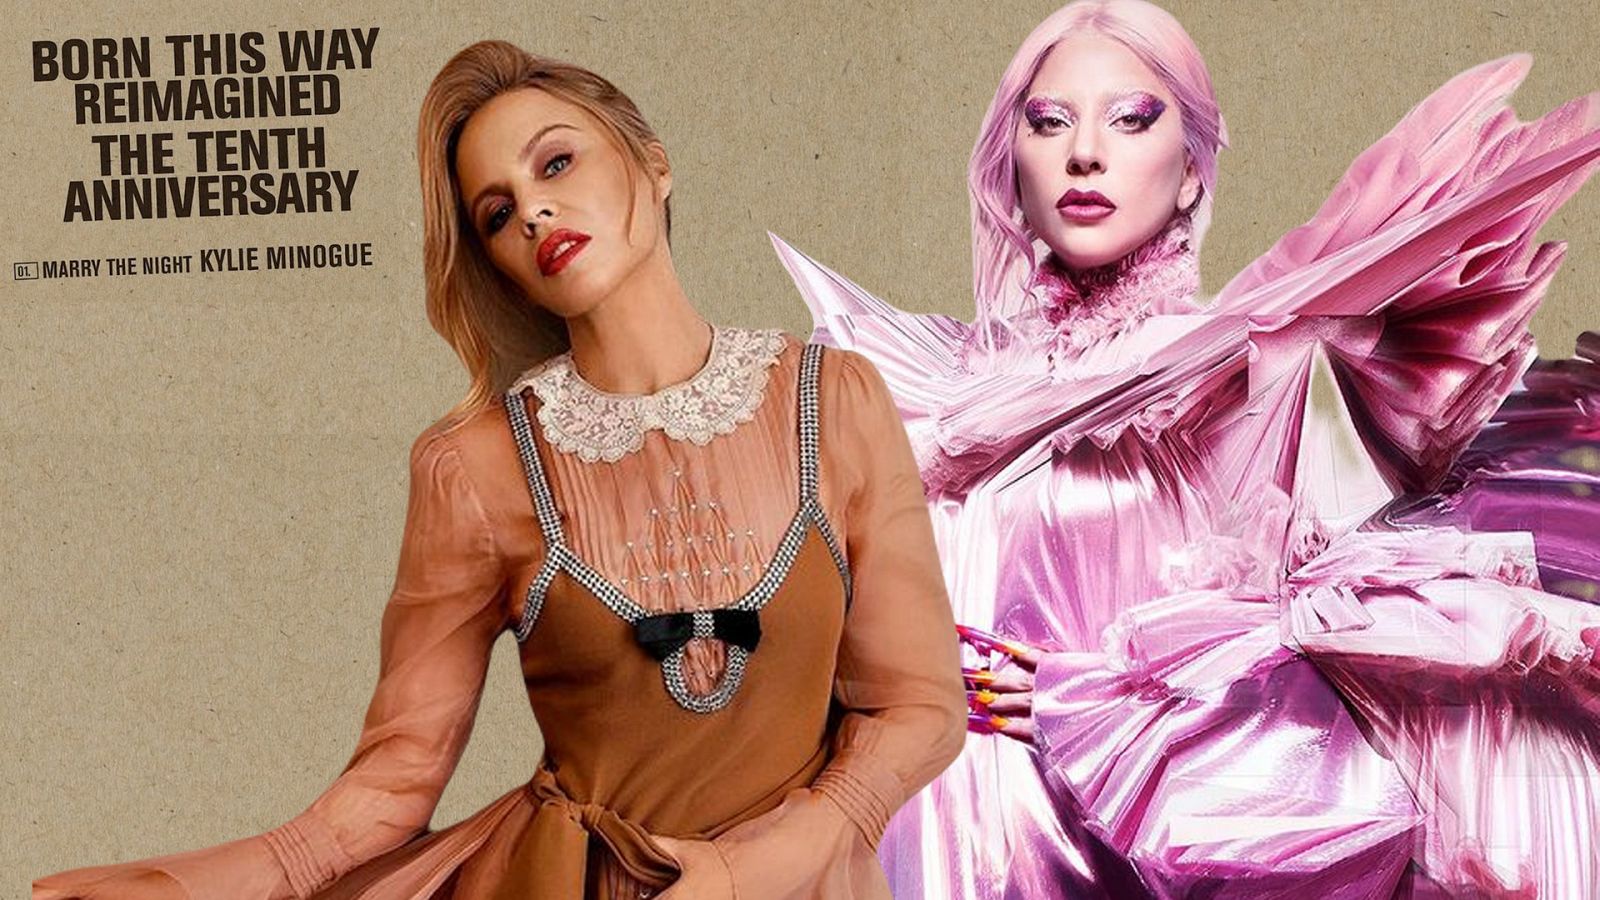 Kylie Minogue versiona 'Marry the night' de Lady Gaga por el aniversario de 'Born this way'